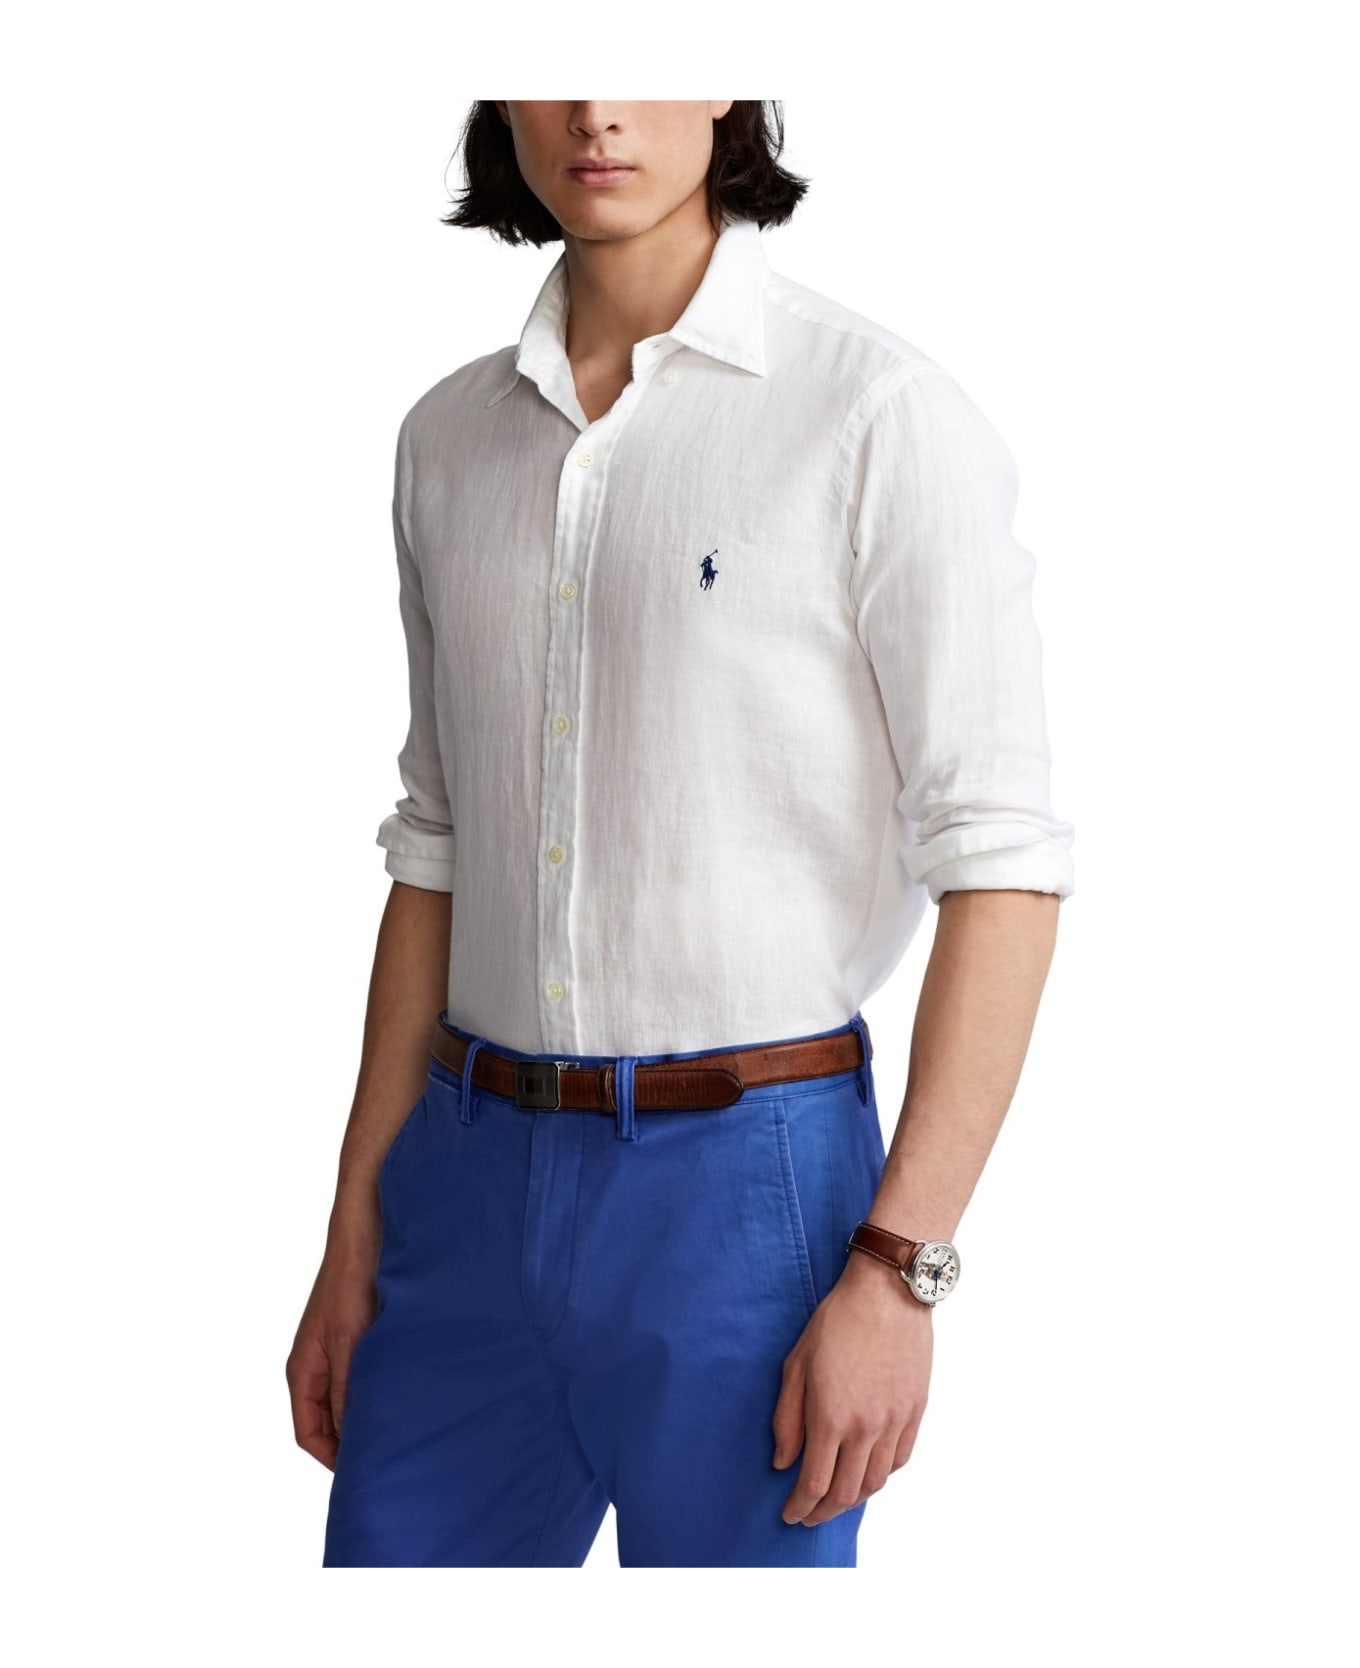 Polo Ralph Lauren Linen Shirt - Bianco